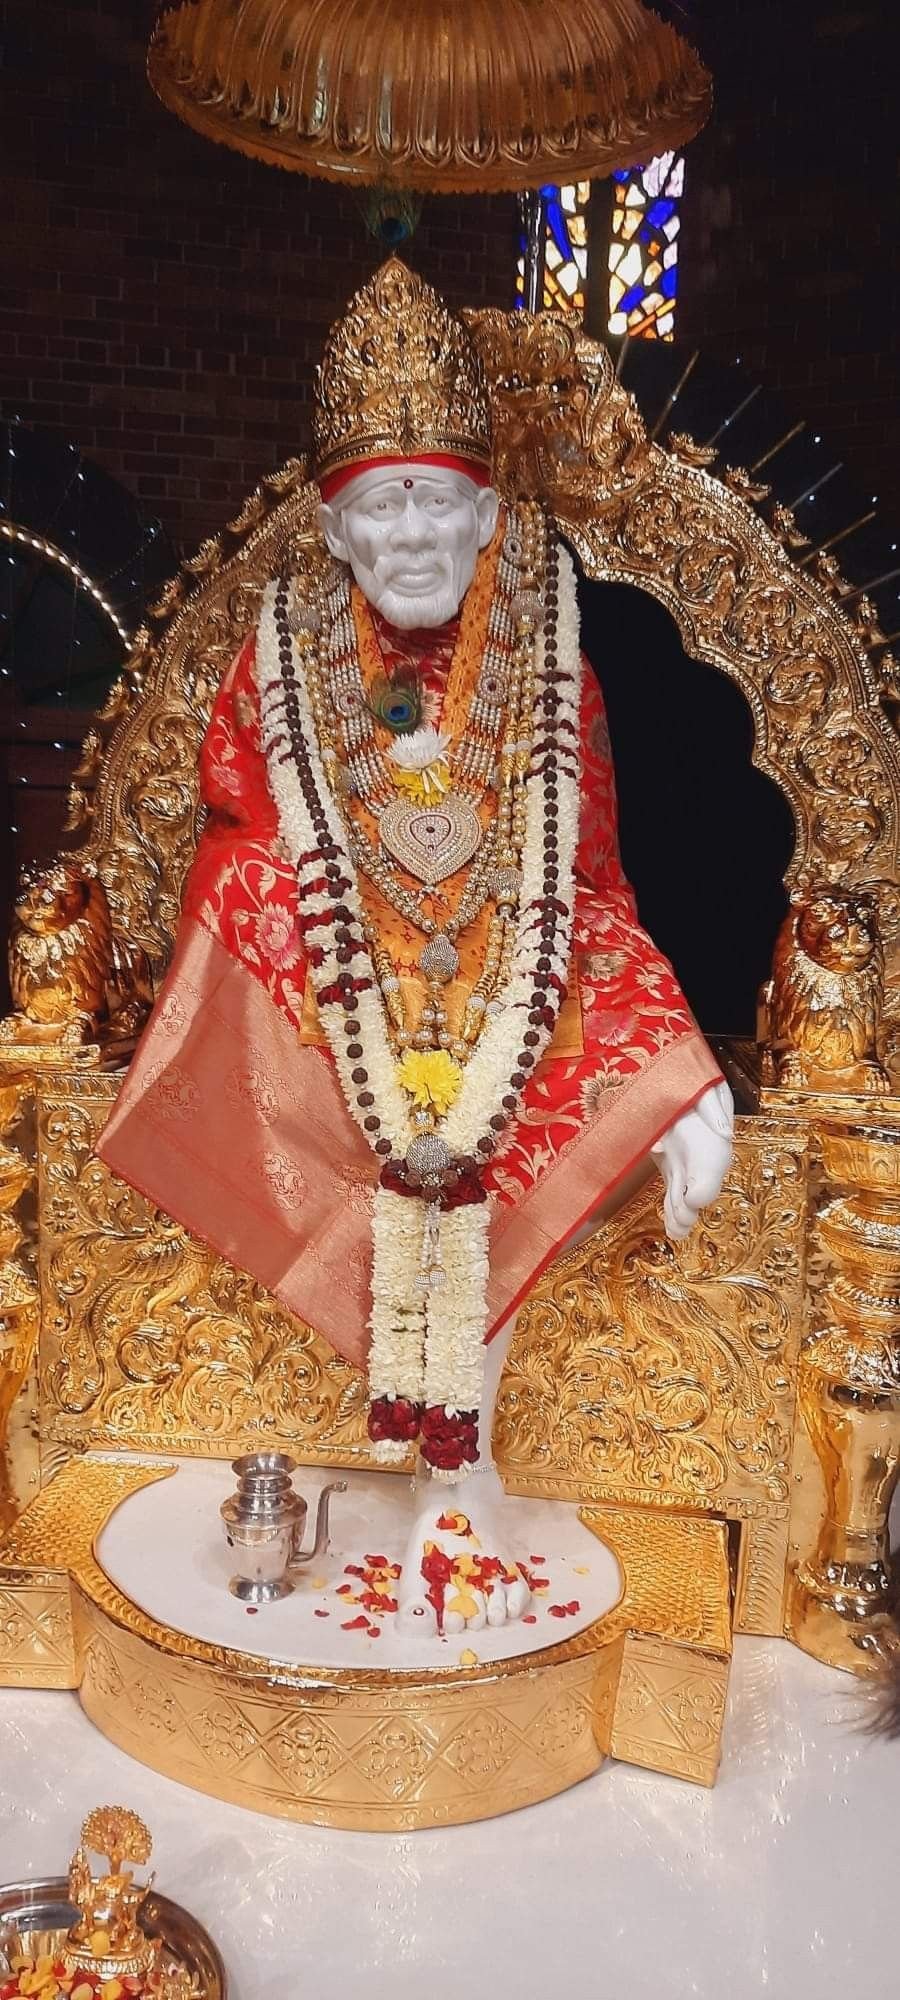 HD Images Of Sai Baba In Raja Alangaram